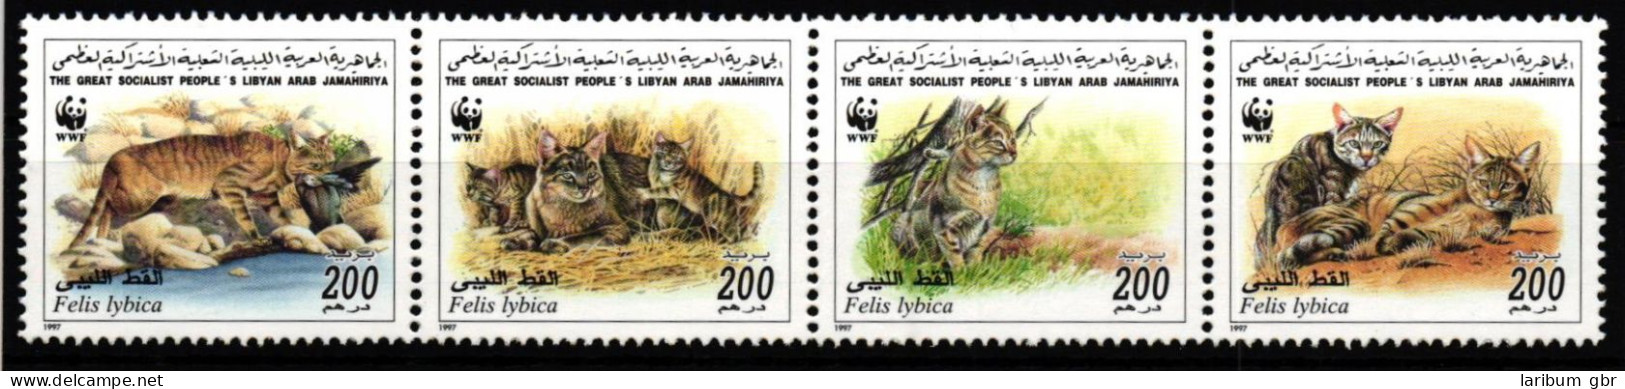 Libyen 2496-2499 Postfrisch Als 4er Streifen, Wildkatzen #JV460 - Libye